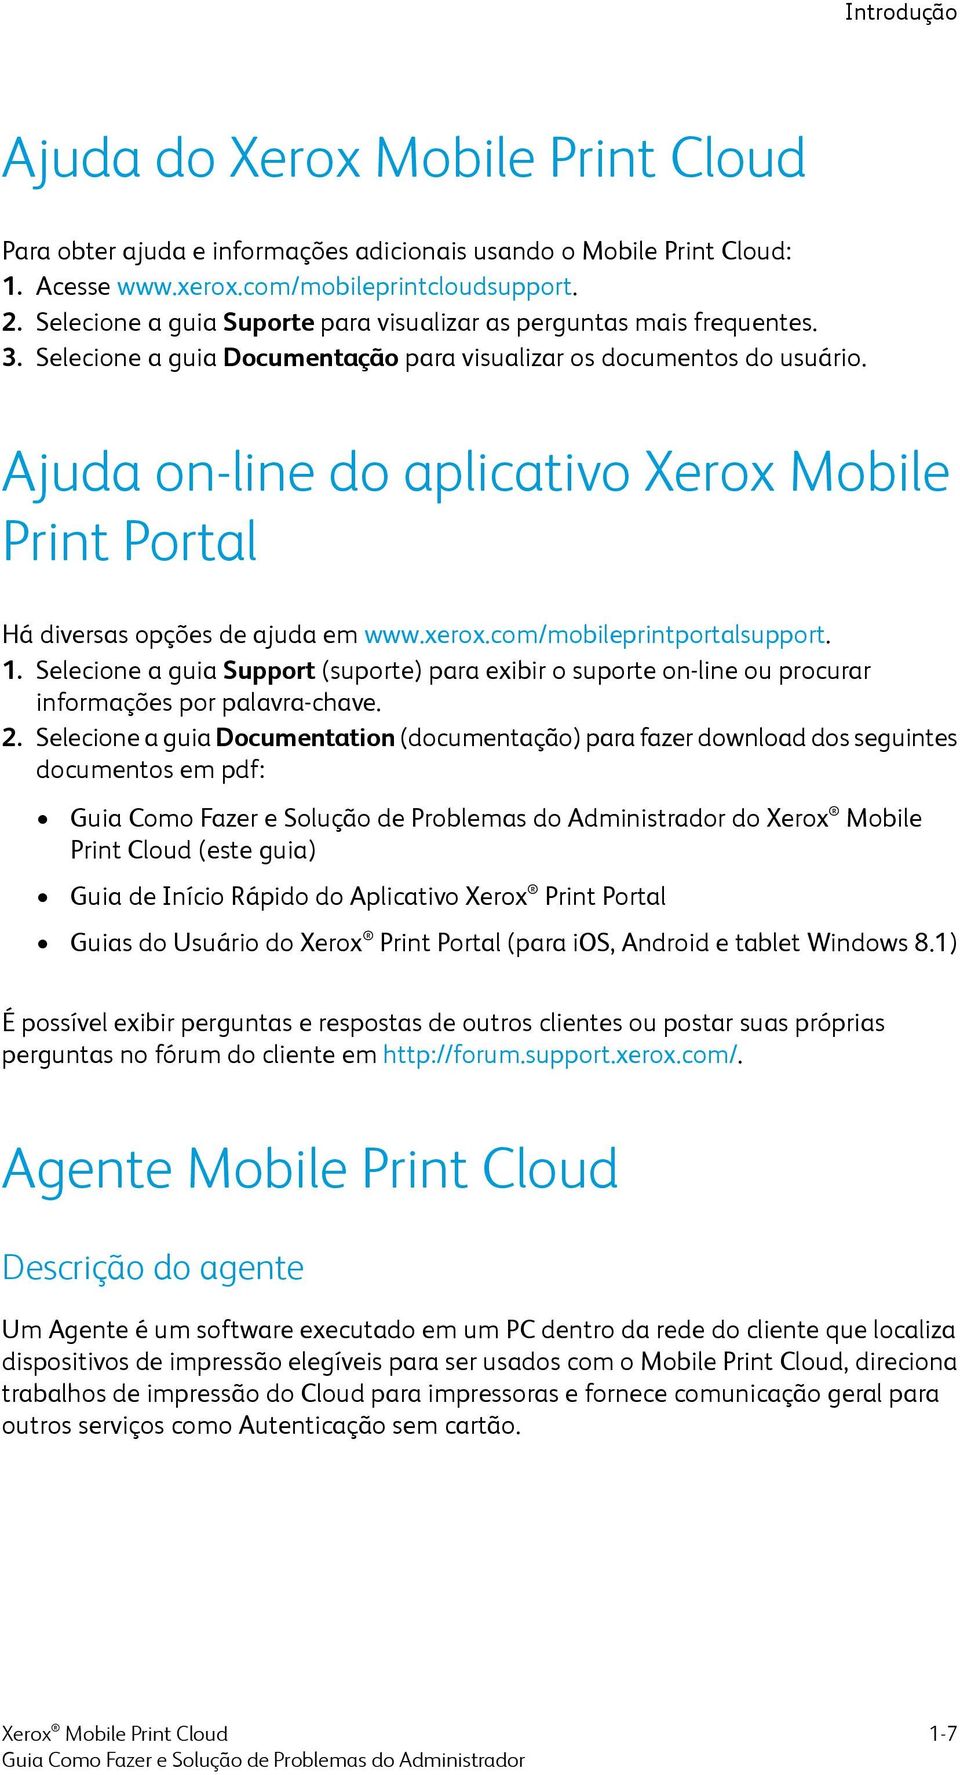 Ajuda on-line do aplicativo Xerox Mobile Print Portal Há diversas opções de ajuda em www.xerox.com/mobileprintportalsupport. 1.